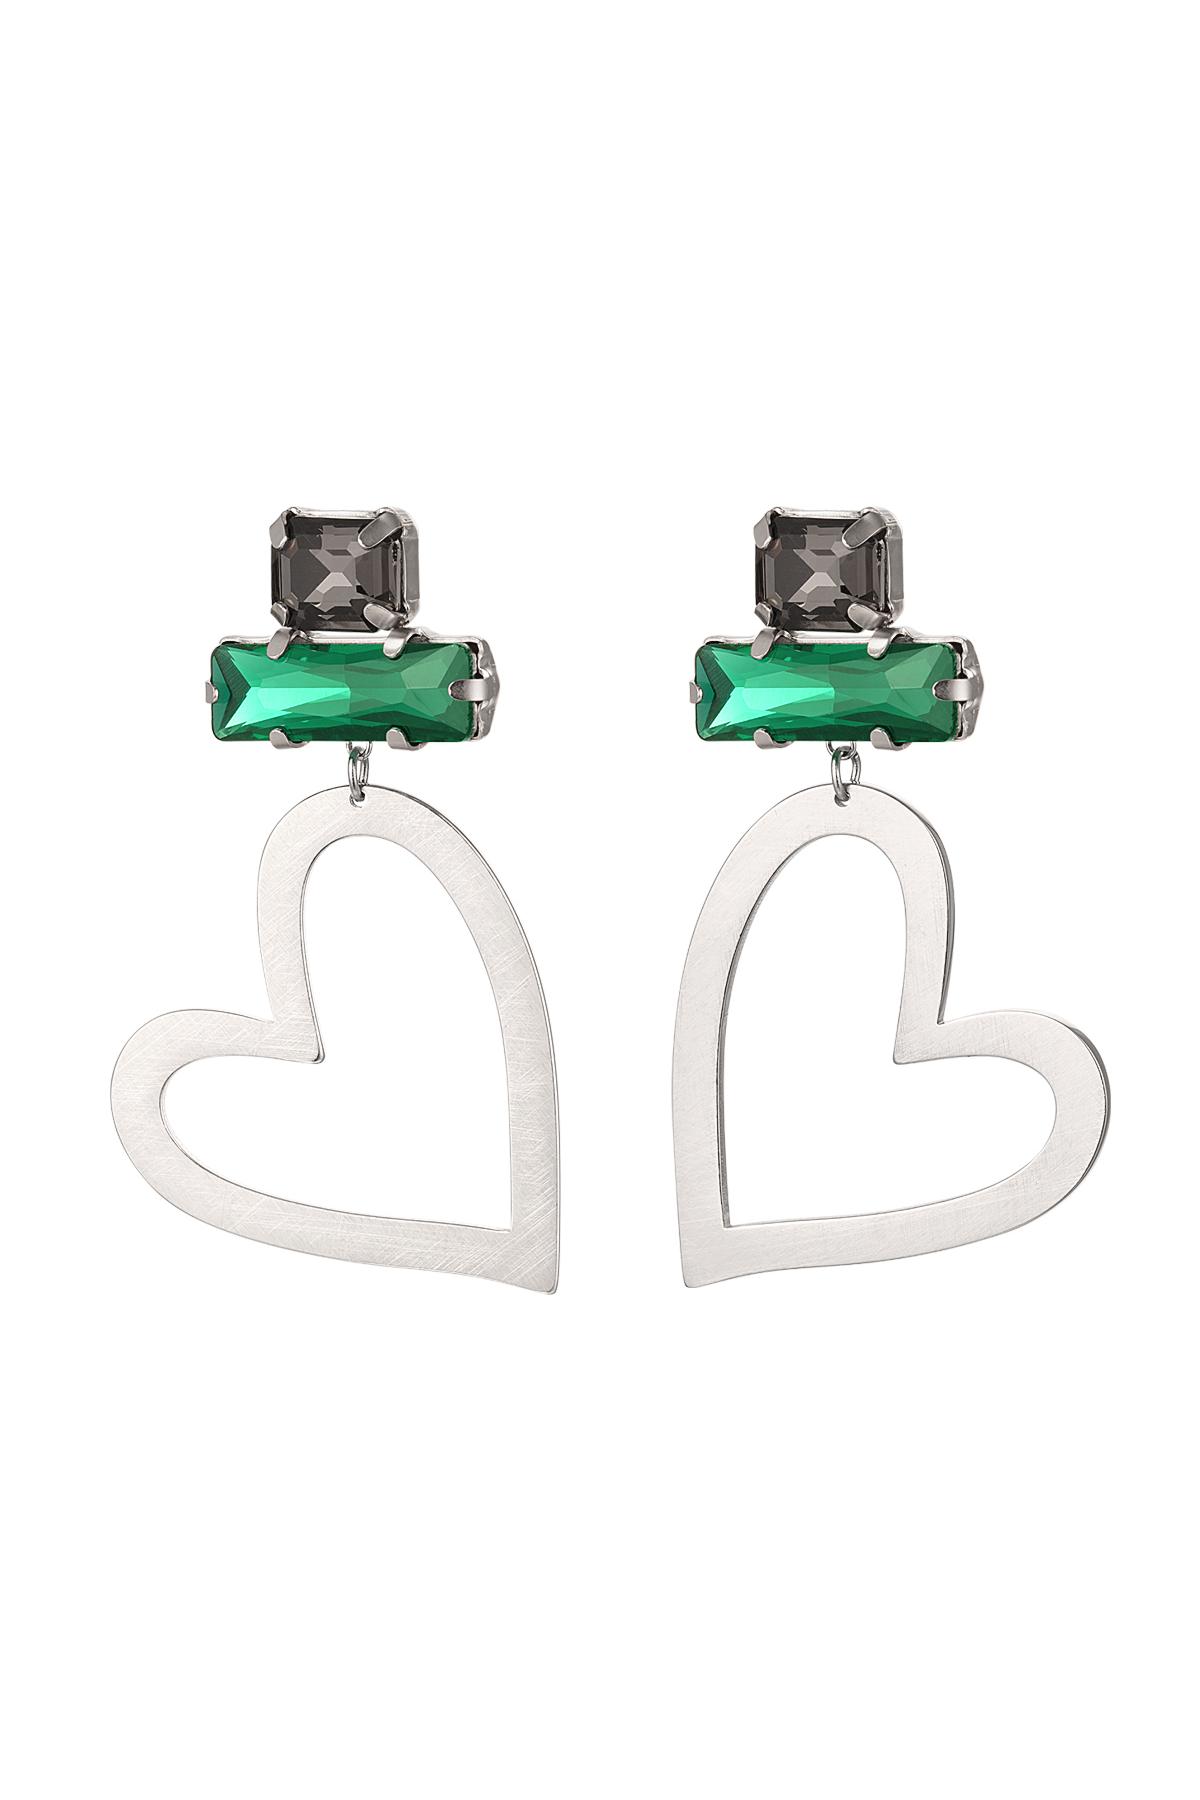 Boucles d'oreilles coeur avec perles de verre Vert& Argenté Acier inoxydable h5 